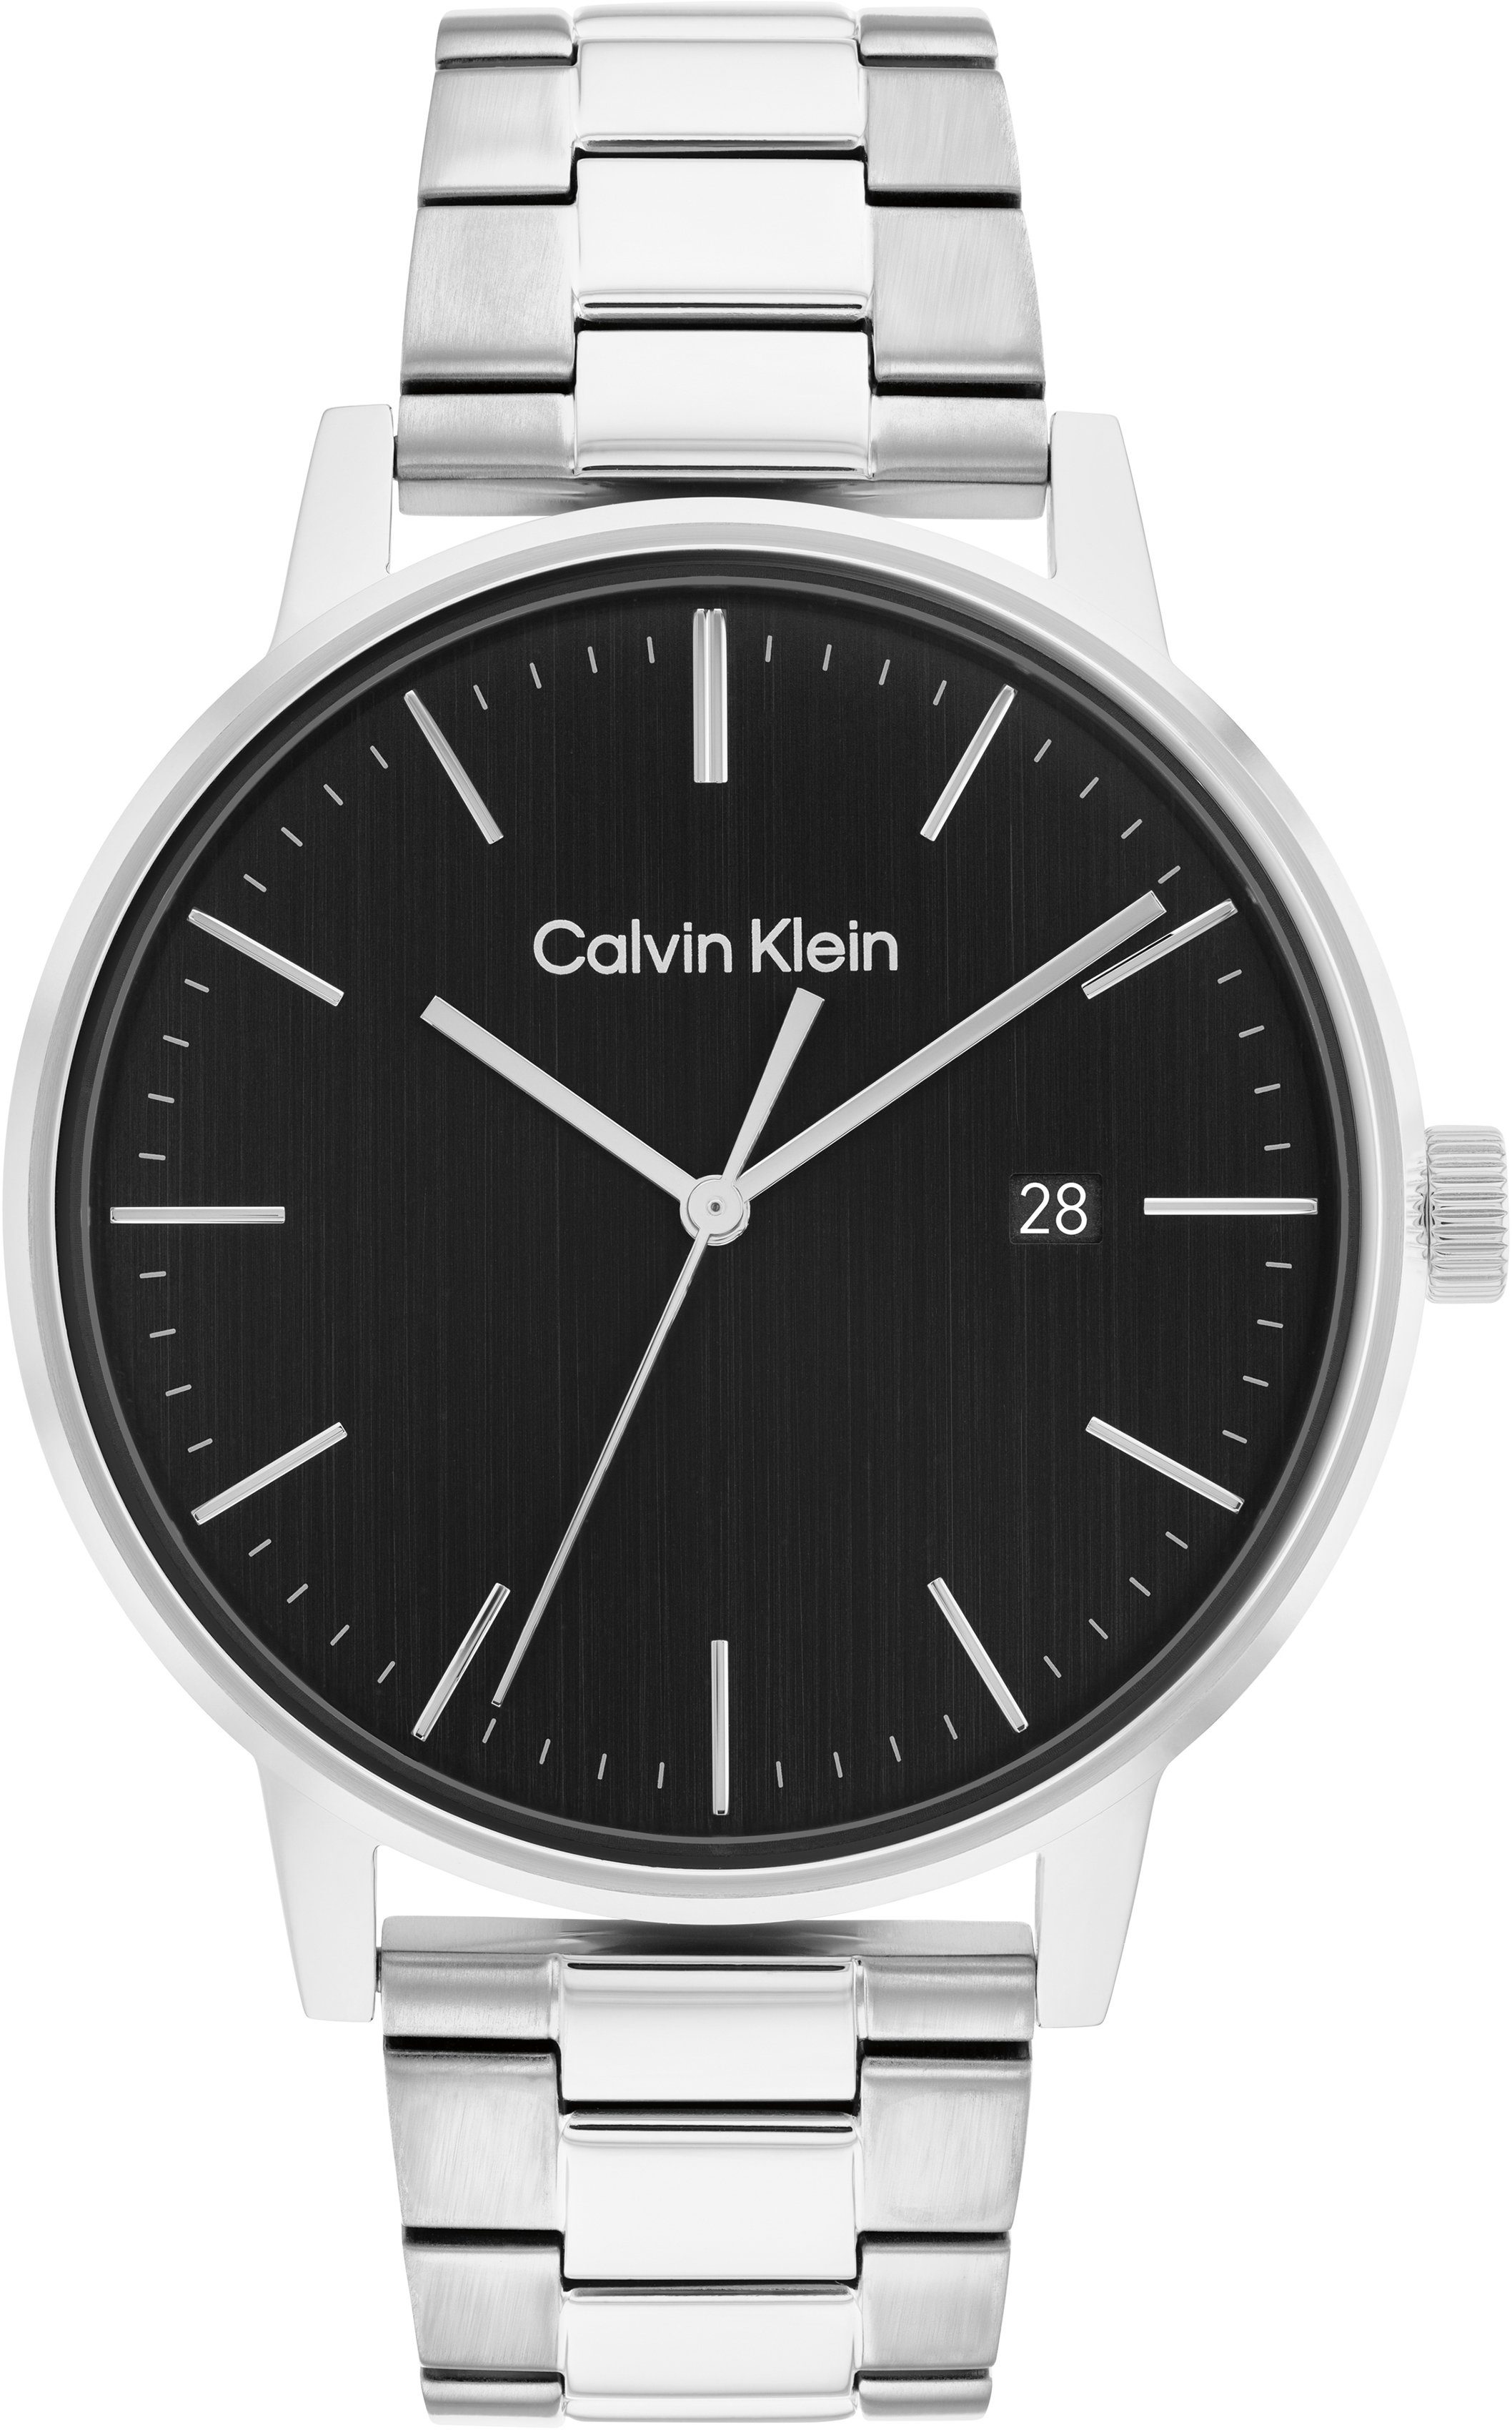 Calvin Klein Quarzuhr Linked, 25200053, Armbanduhr, Herrenuhr, Datum, Mineralglas